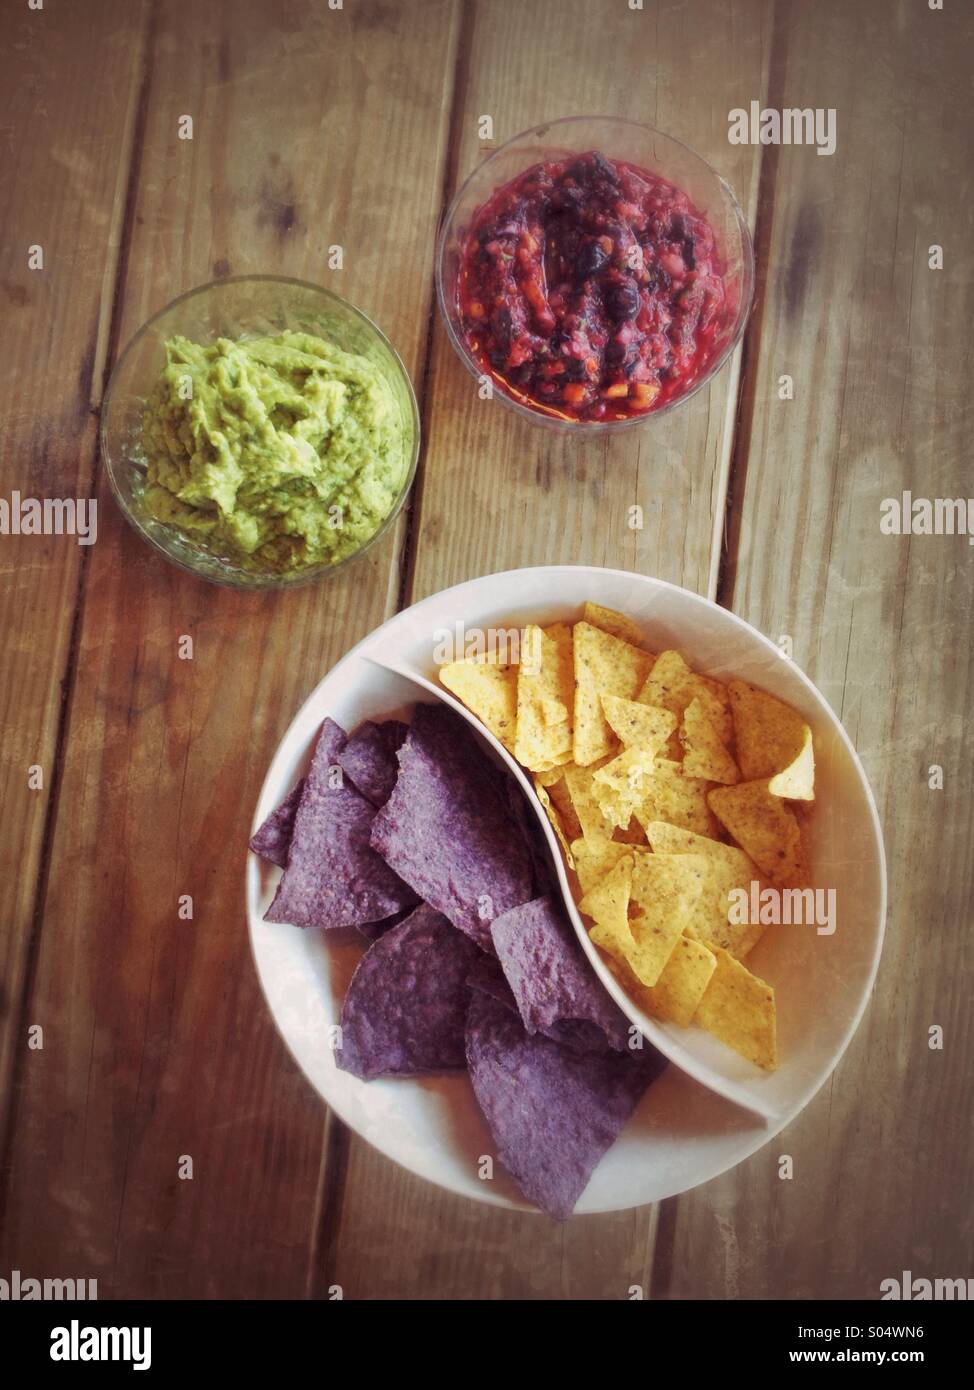 Bols de salsa aux bleuets, le guacamole, chips de maïs jaune et bleu sur une table de pique-nique Banque D'Images